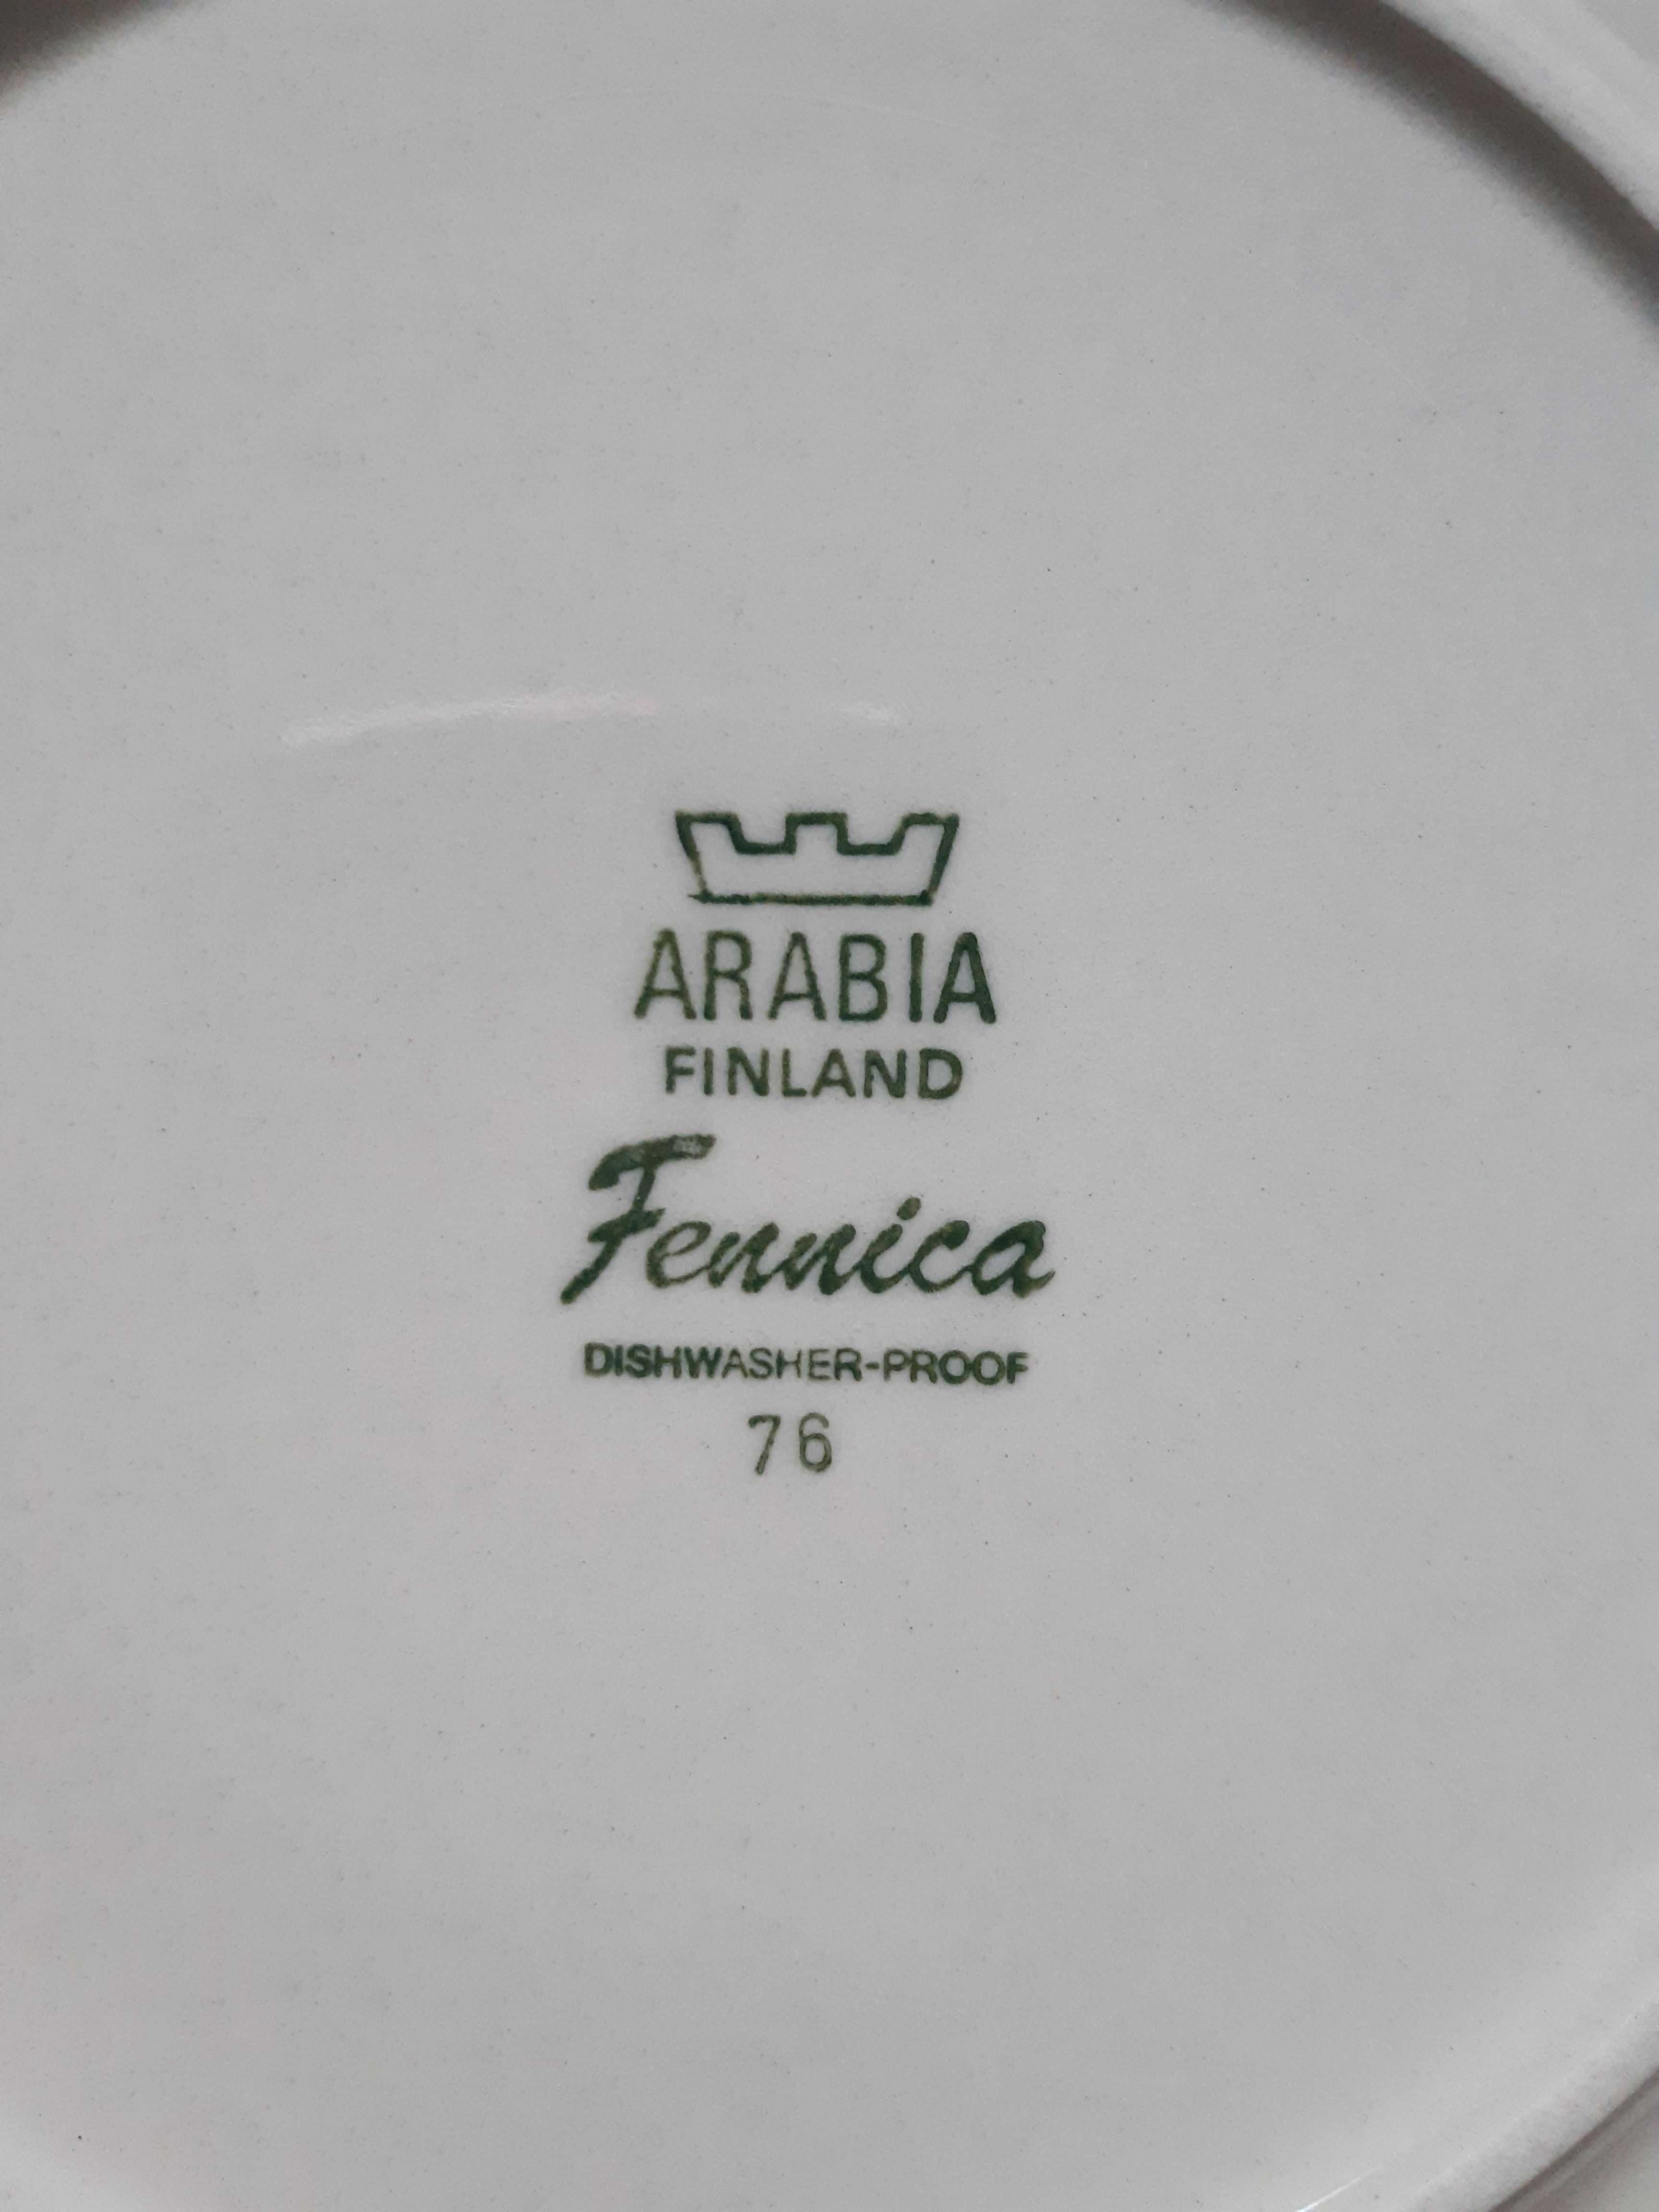 Talerz deserowy, do przekąsek ARABIA Finlandia wzór Fennica lata 80-te